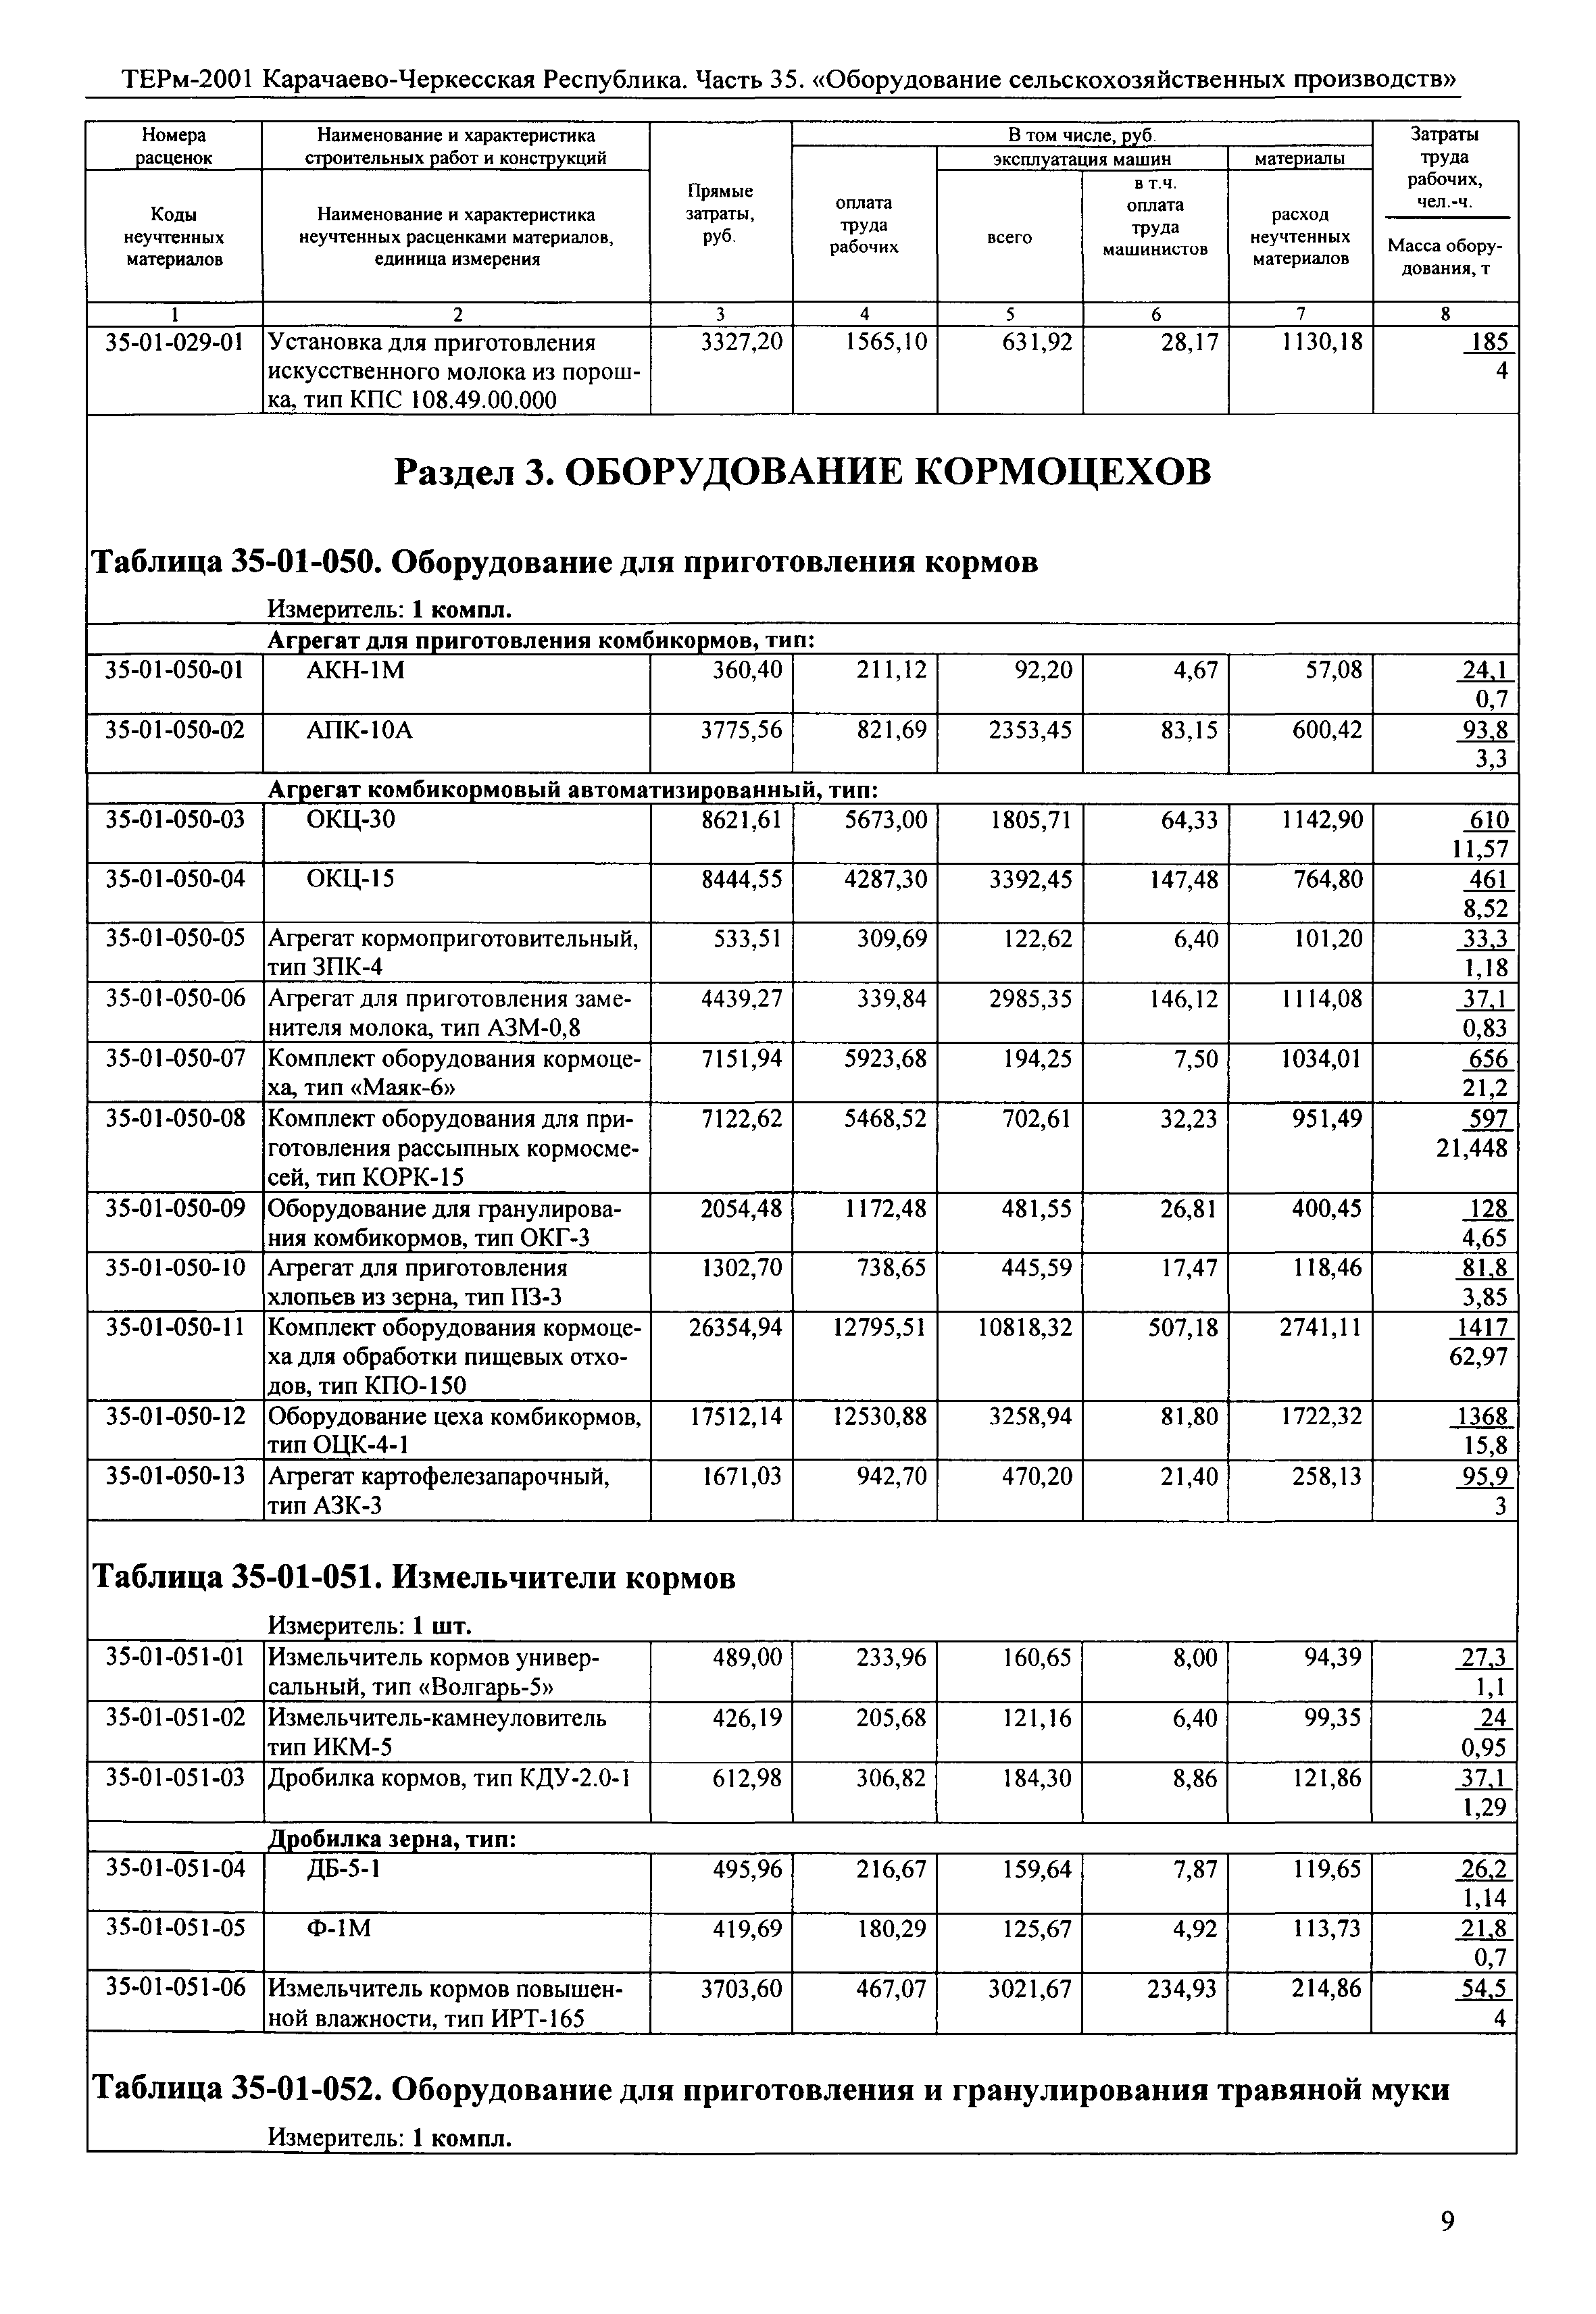 ТЕРм Карачаево-Черкесская Республика 35-2001